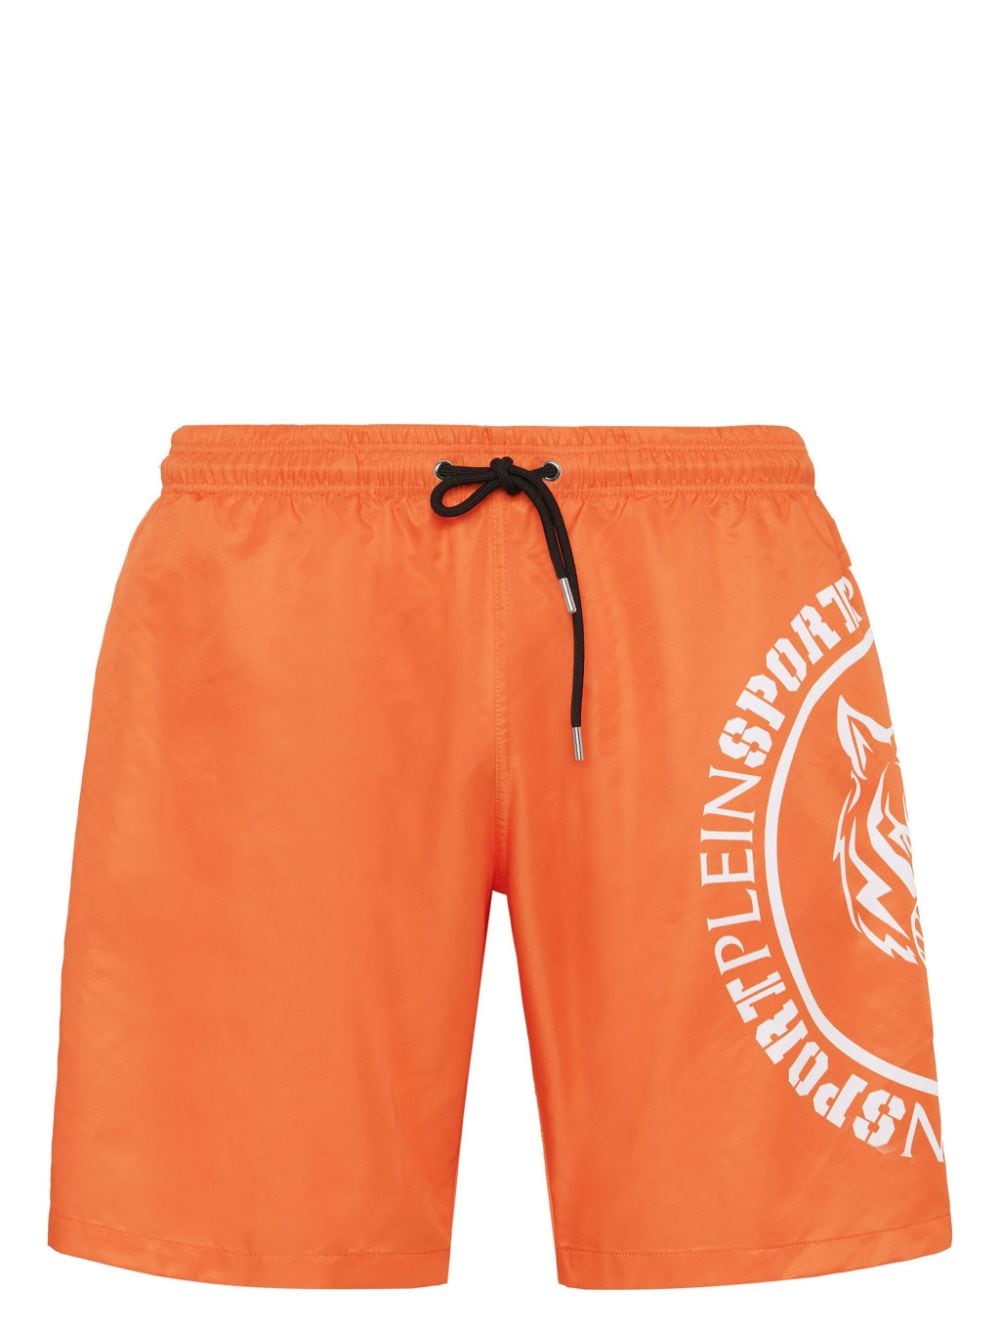 Plein Sport Carbon Tiger swim shorts - Orange von Plein Sport